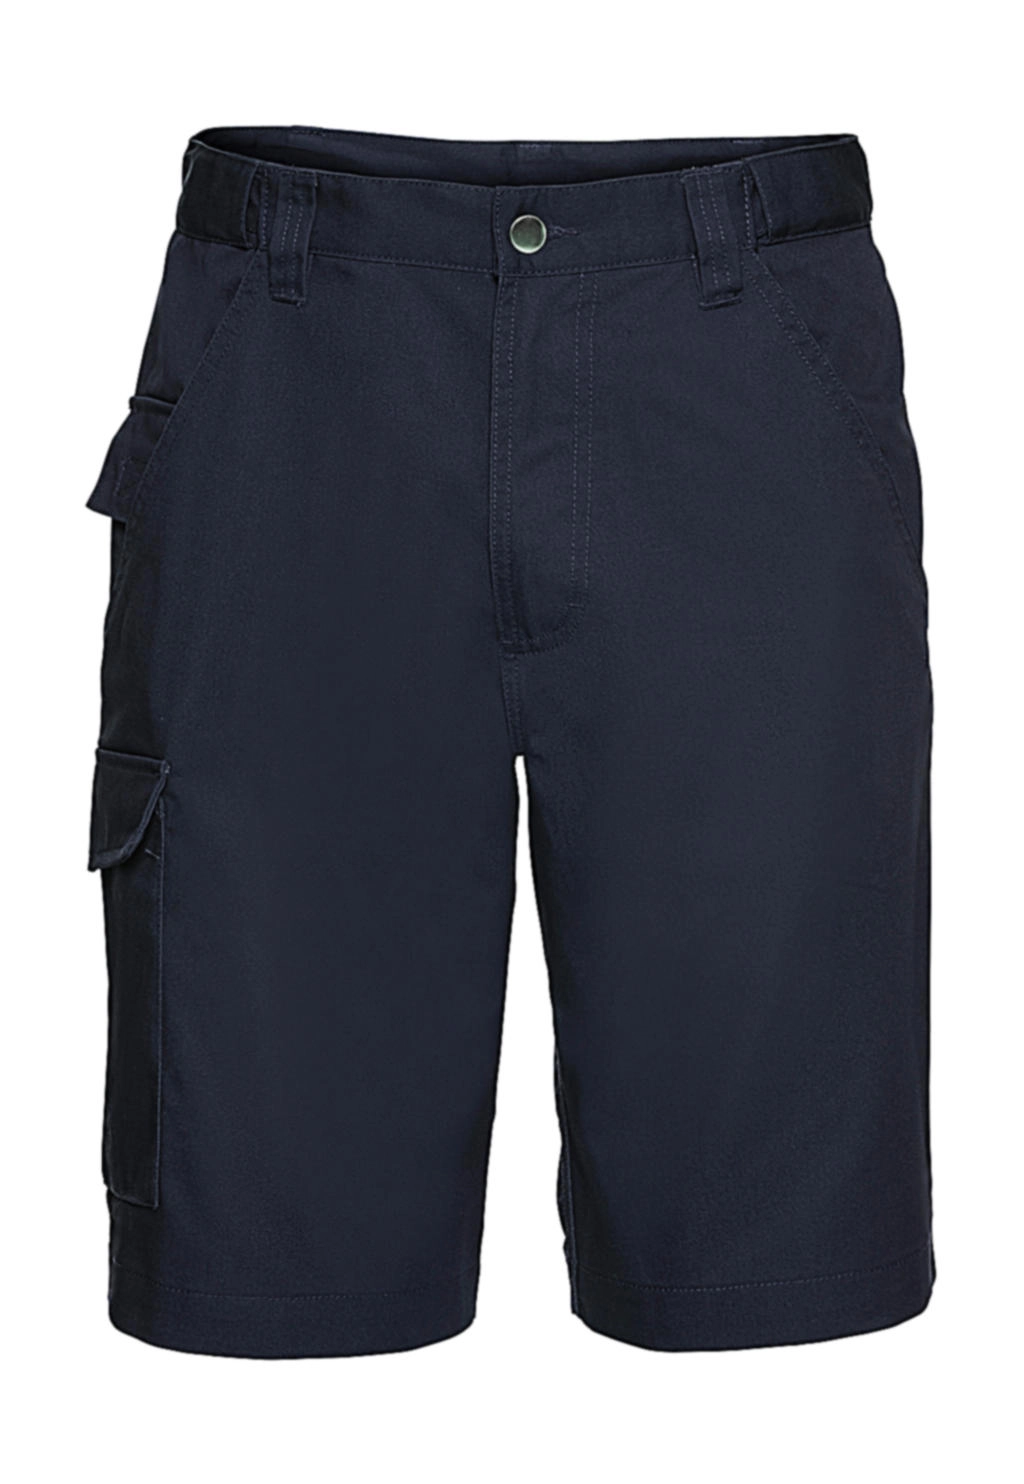 Twill Workwear Shorts zum Besticken und Bedrucken in der Farbe French Navy mit Ihren Logo, Schriftzug oder Motiv.